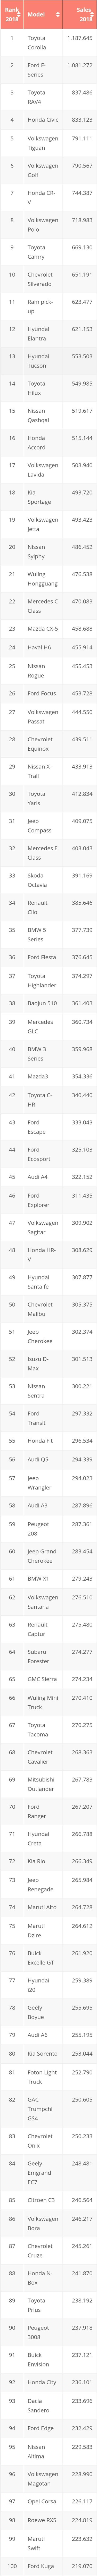 2018년 글로벌 자동차 판매 순위 TOP 100 | 인스티즈